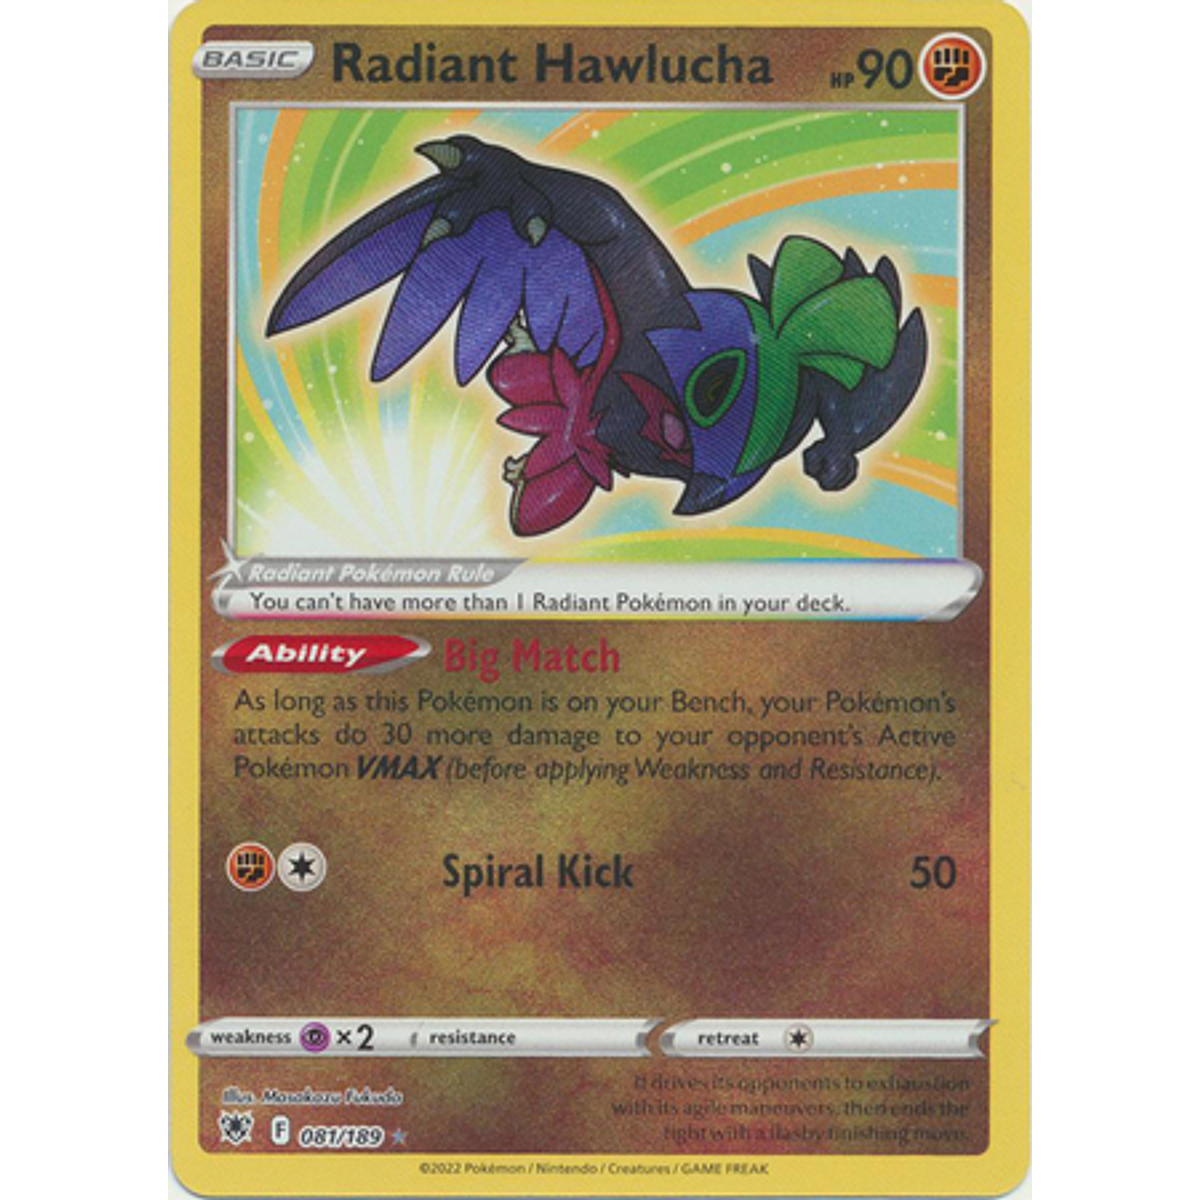 Hawlucha Radiante / Radiant Hawlucha (081/189), Busca de Cards